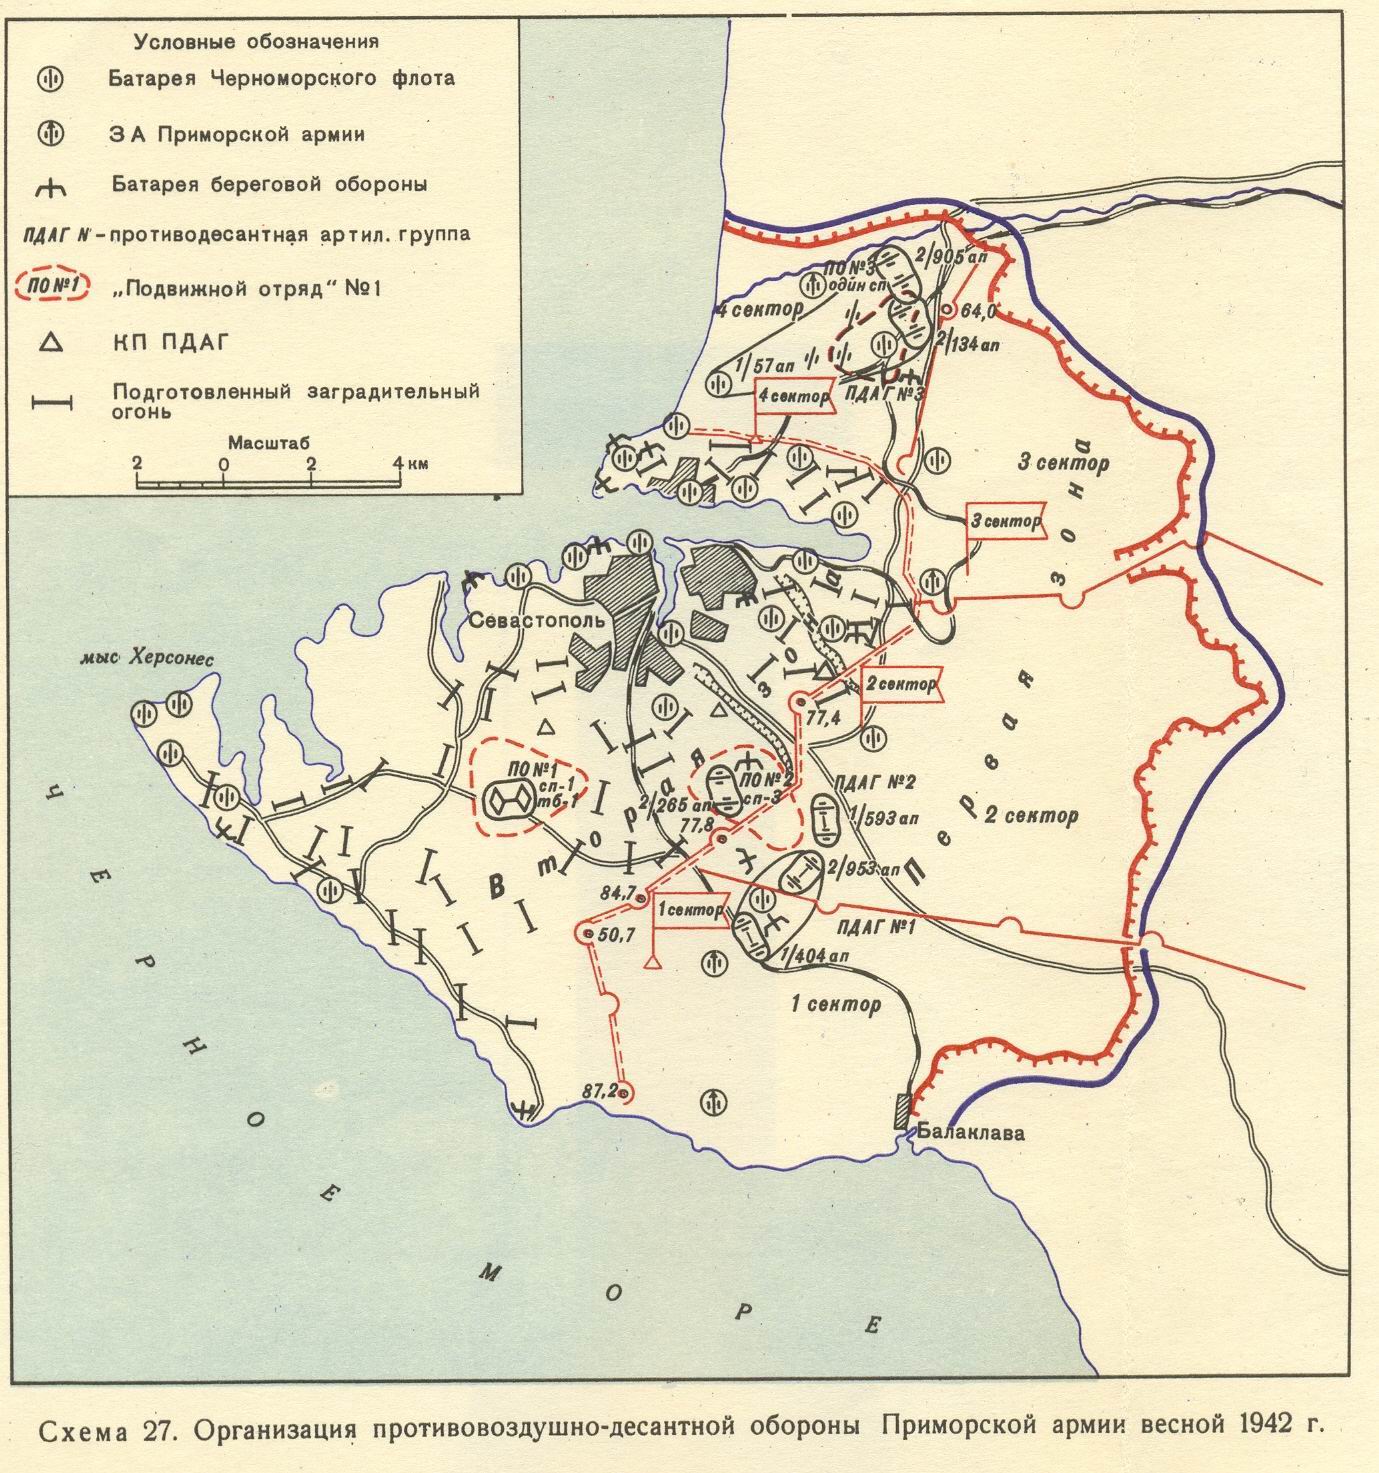 siege of sevastopol 1942